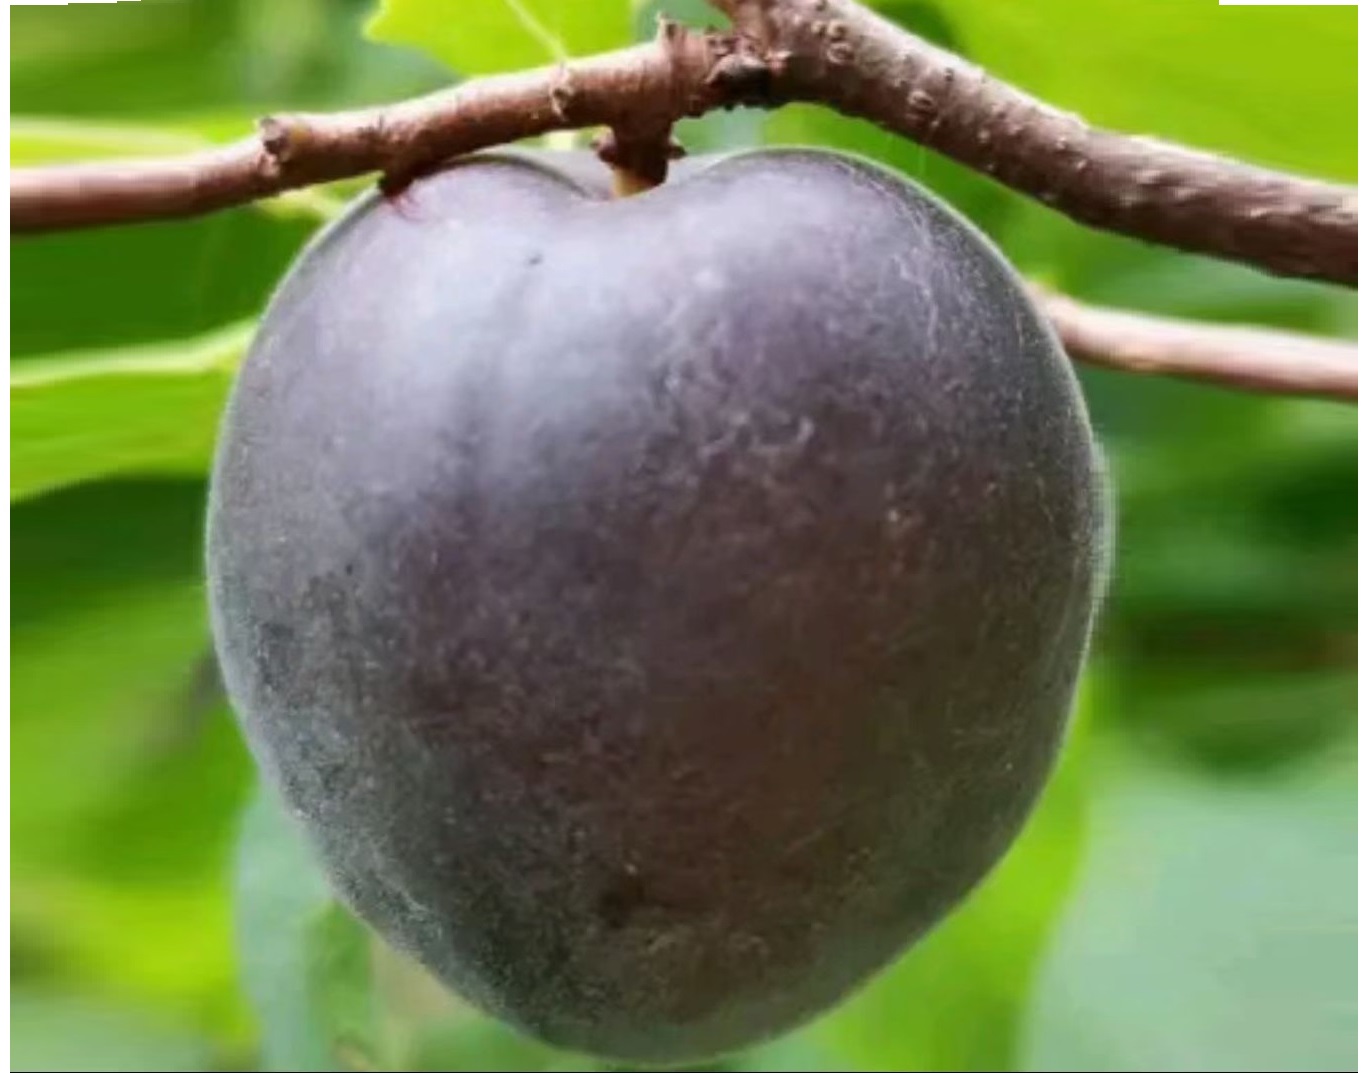 帝味黑杏,黑色的杏你见过吗?果面紫黑色果肉紫红如血桃,味香甜